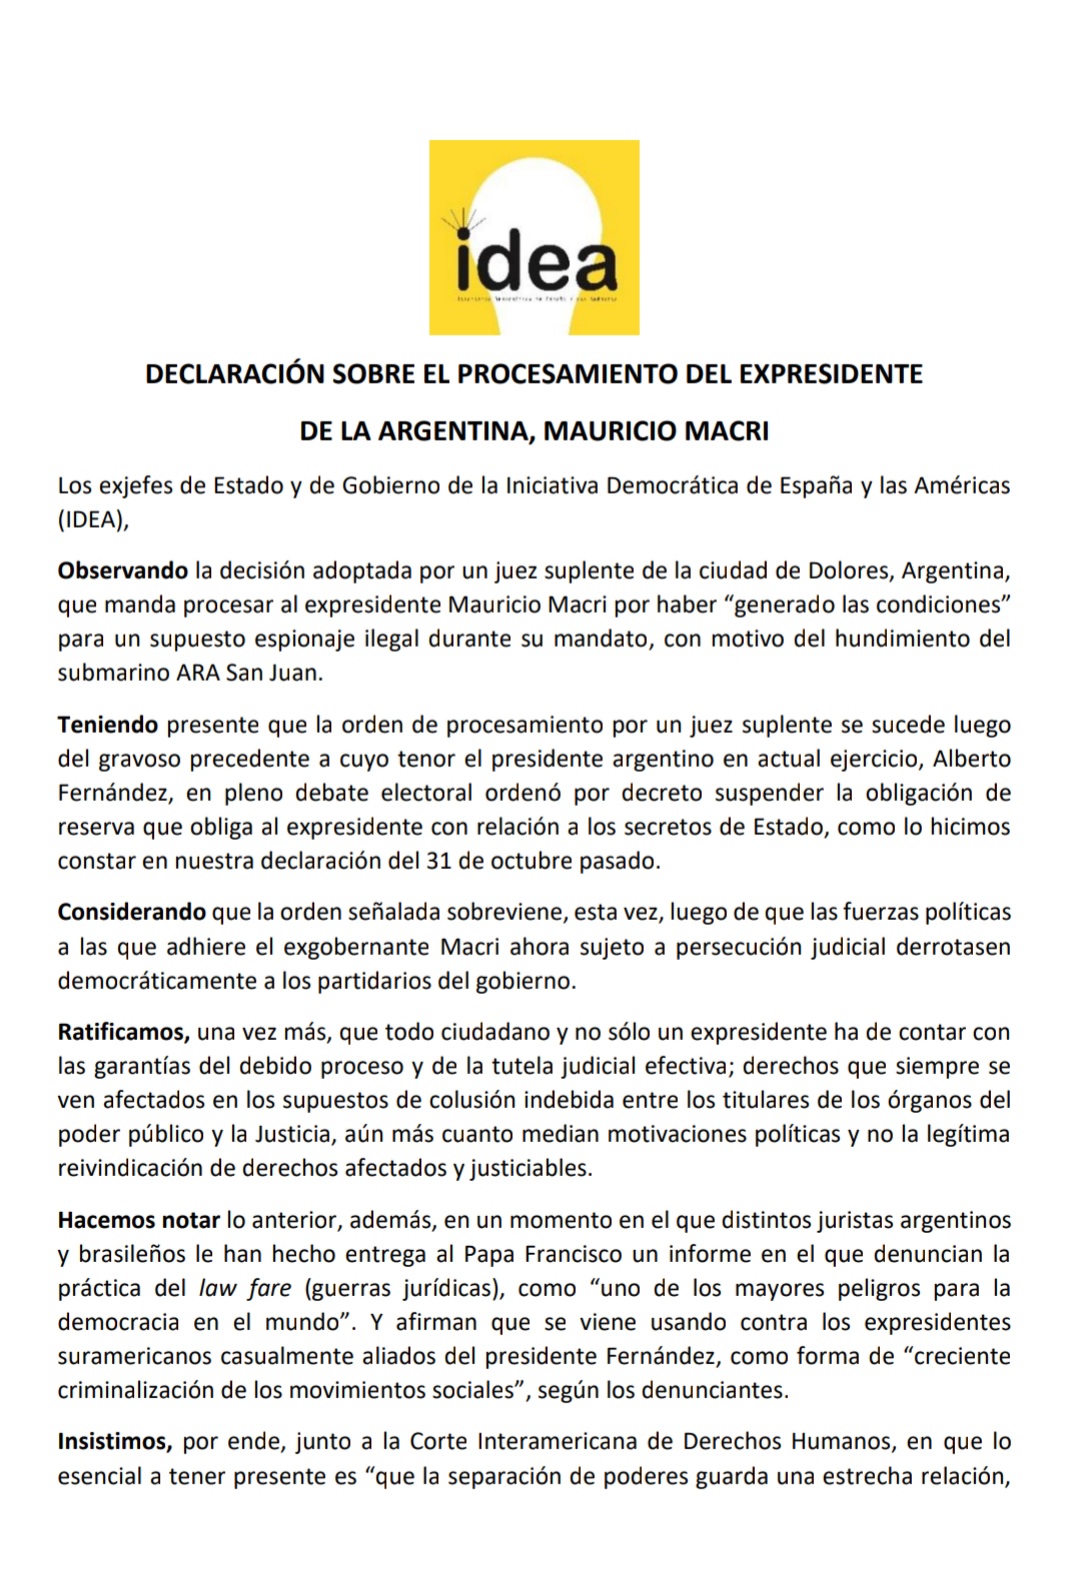 Un grupo de expresidentes emitió un comunicado contra el procesamiento de Mauricio Macri